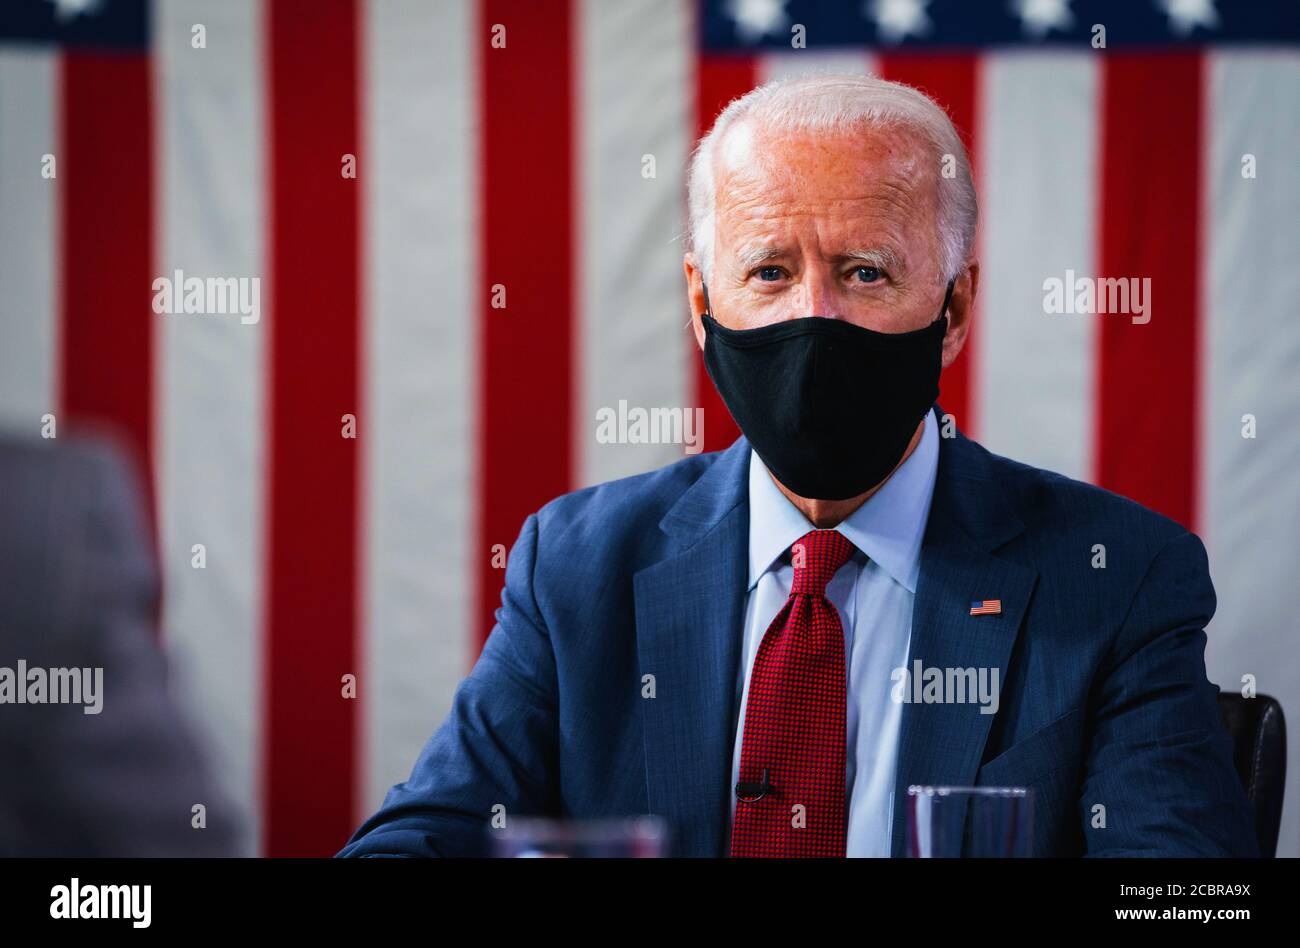 WILMINGTON, DELAWARE, USA - 13 agosto 2020 - il candidato presidenziale americano Joe Biden con Kamala Harris parla allo stato di COVID-19 briefing a Wilming Foto Stock